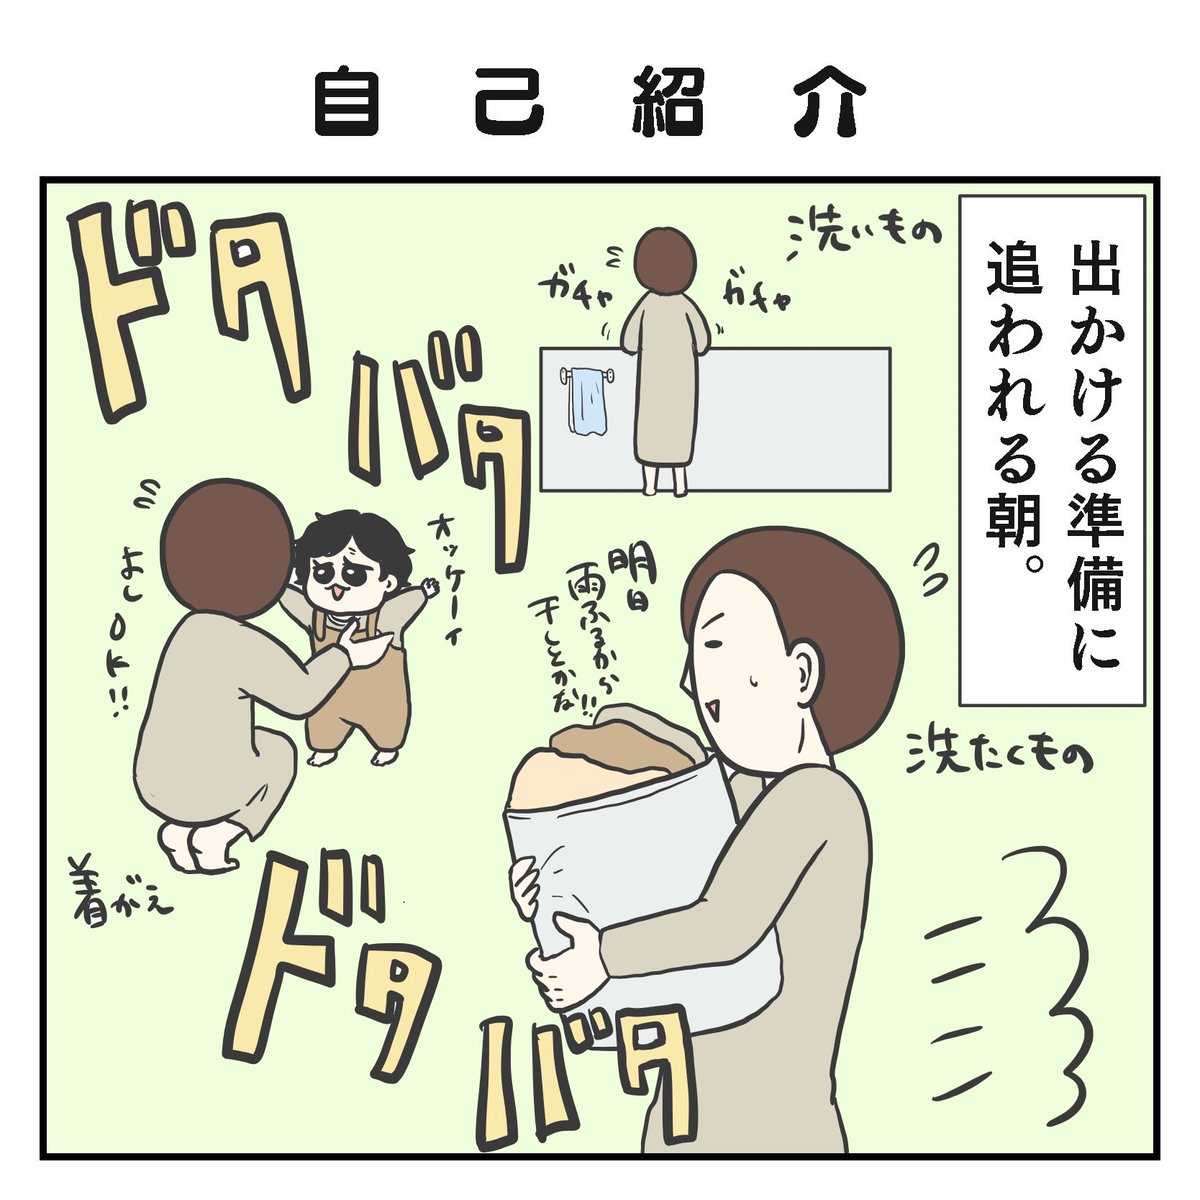 自己紹介(1/3)

#育児漫画 #2歳 